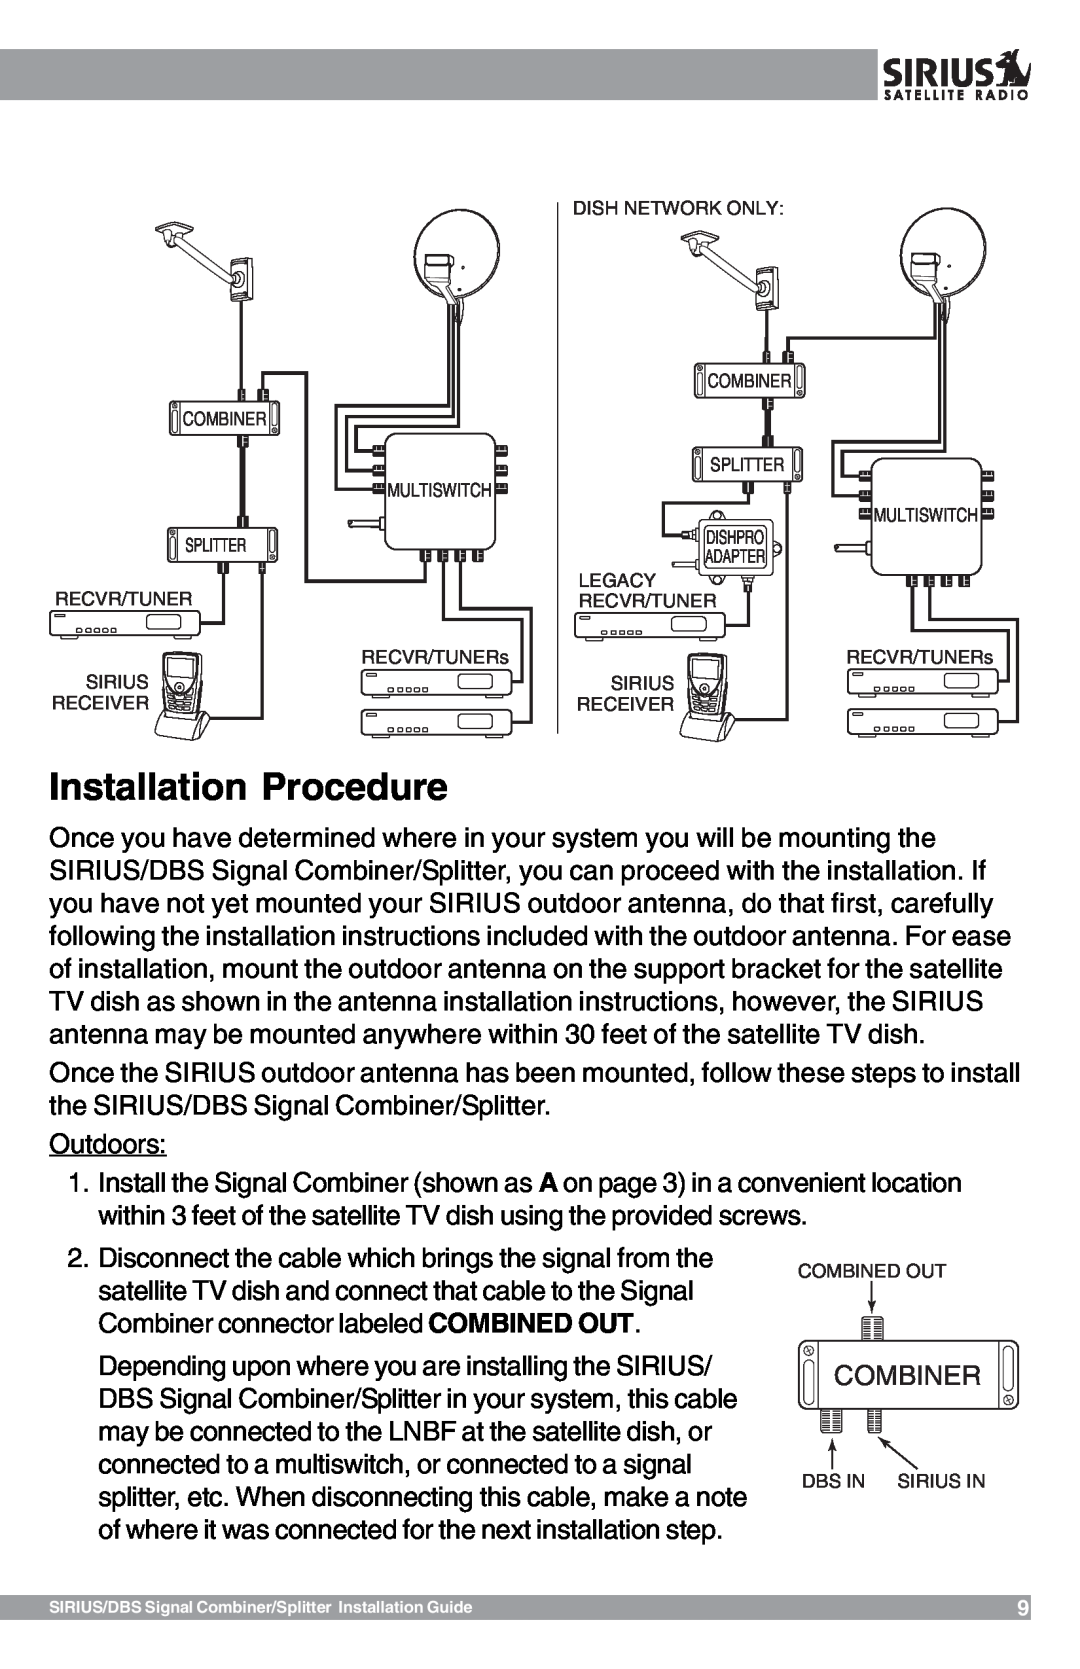 Sirius Satellite Radio SR-100C manual Installation Procedure 